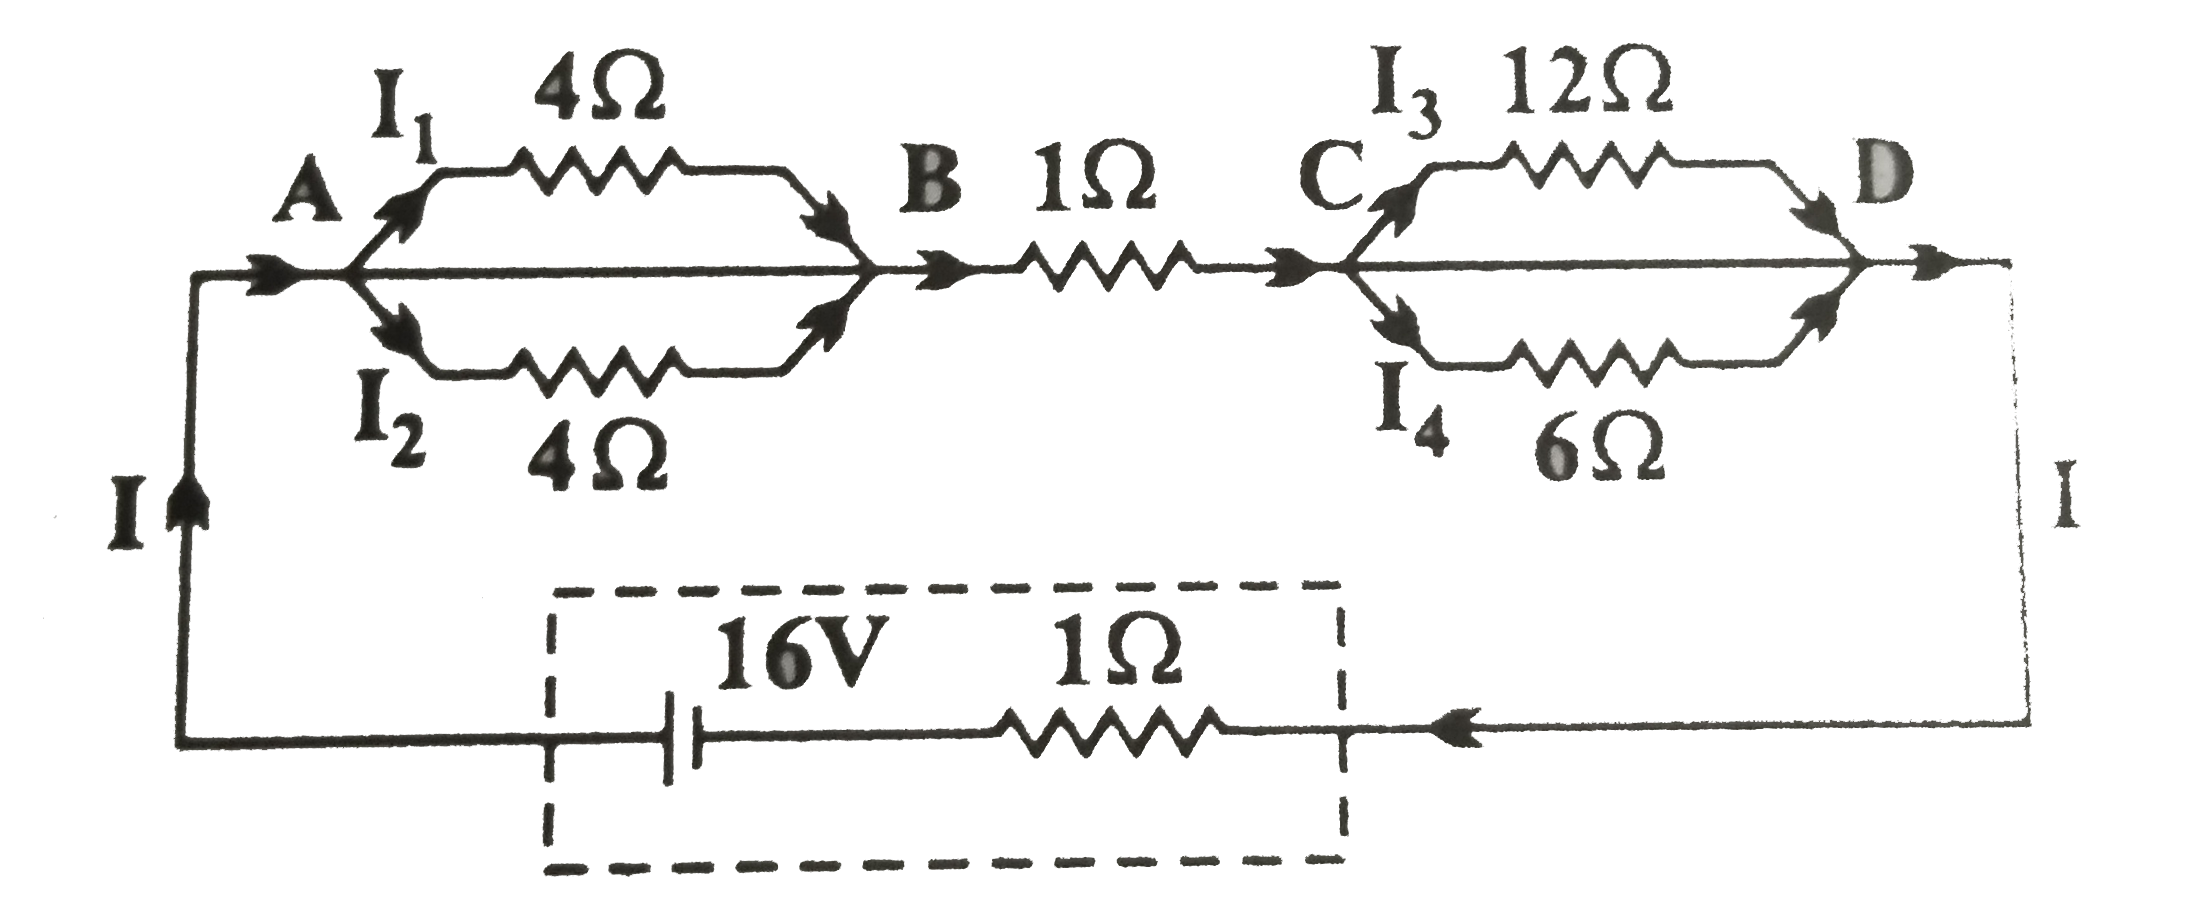 चित्र में दिखाए गए अनुसार 1Omega आंतरिक प्रतिरोध के 16V की एक बैटरी से एक नेटवर्क को जोड़ा गया है।      नेटवर्क का तुल्य प्रतिरोध परिकलित कीजिए।